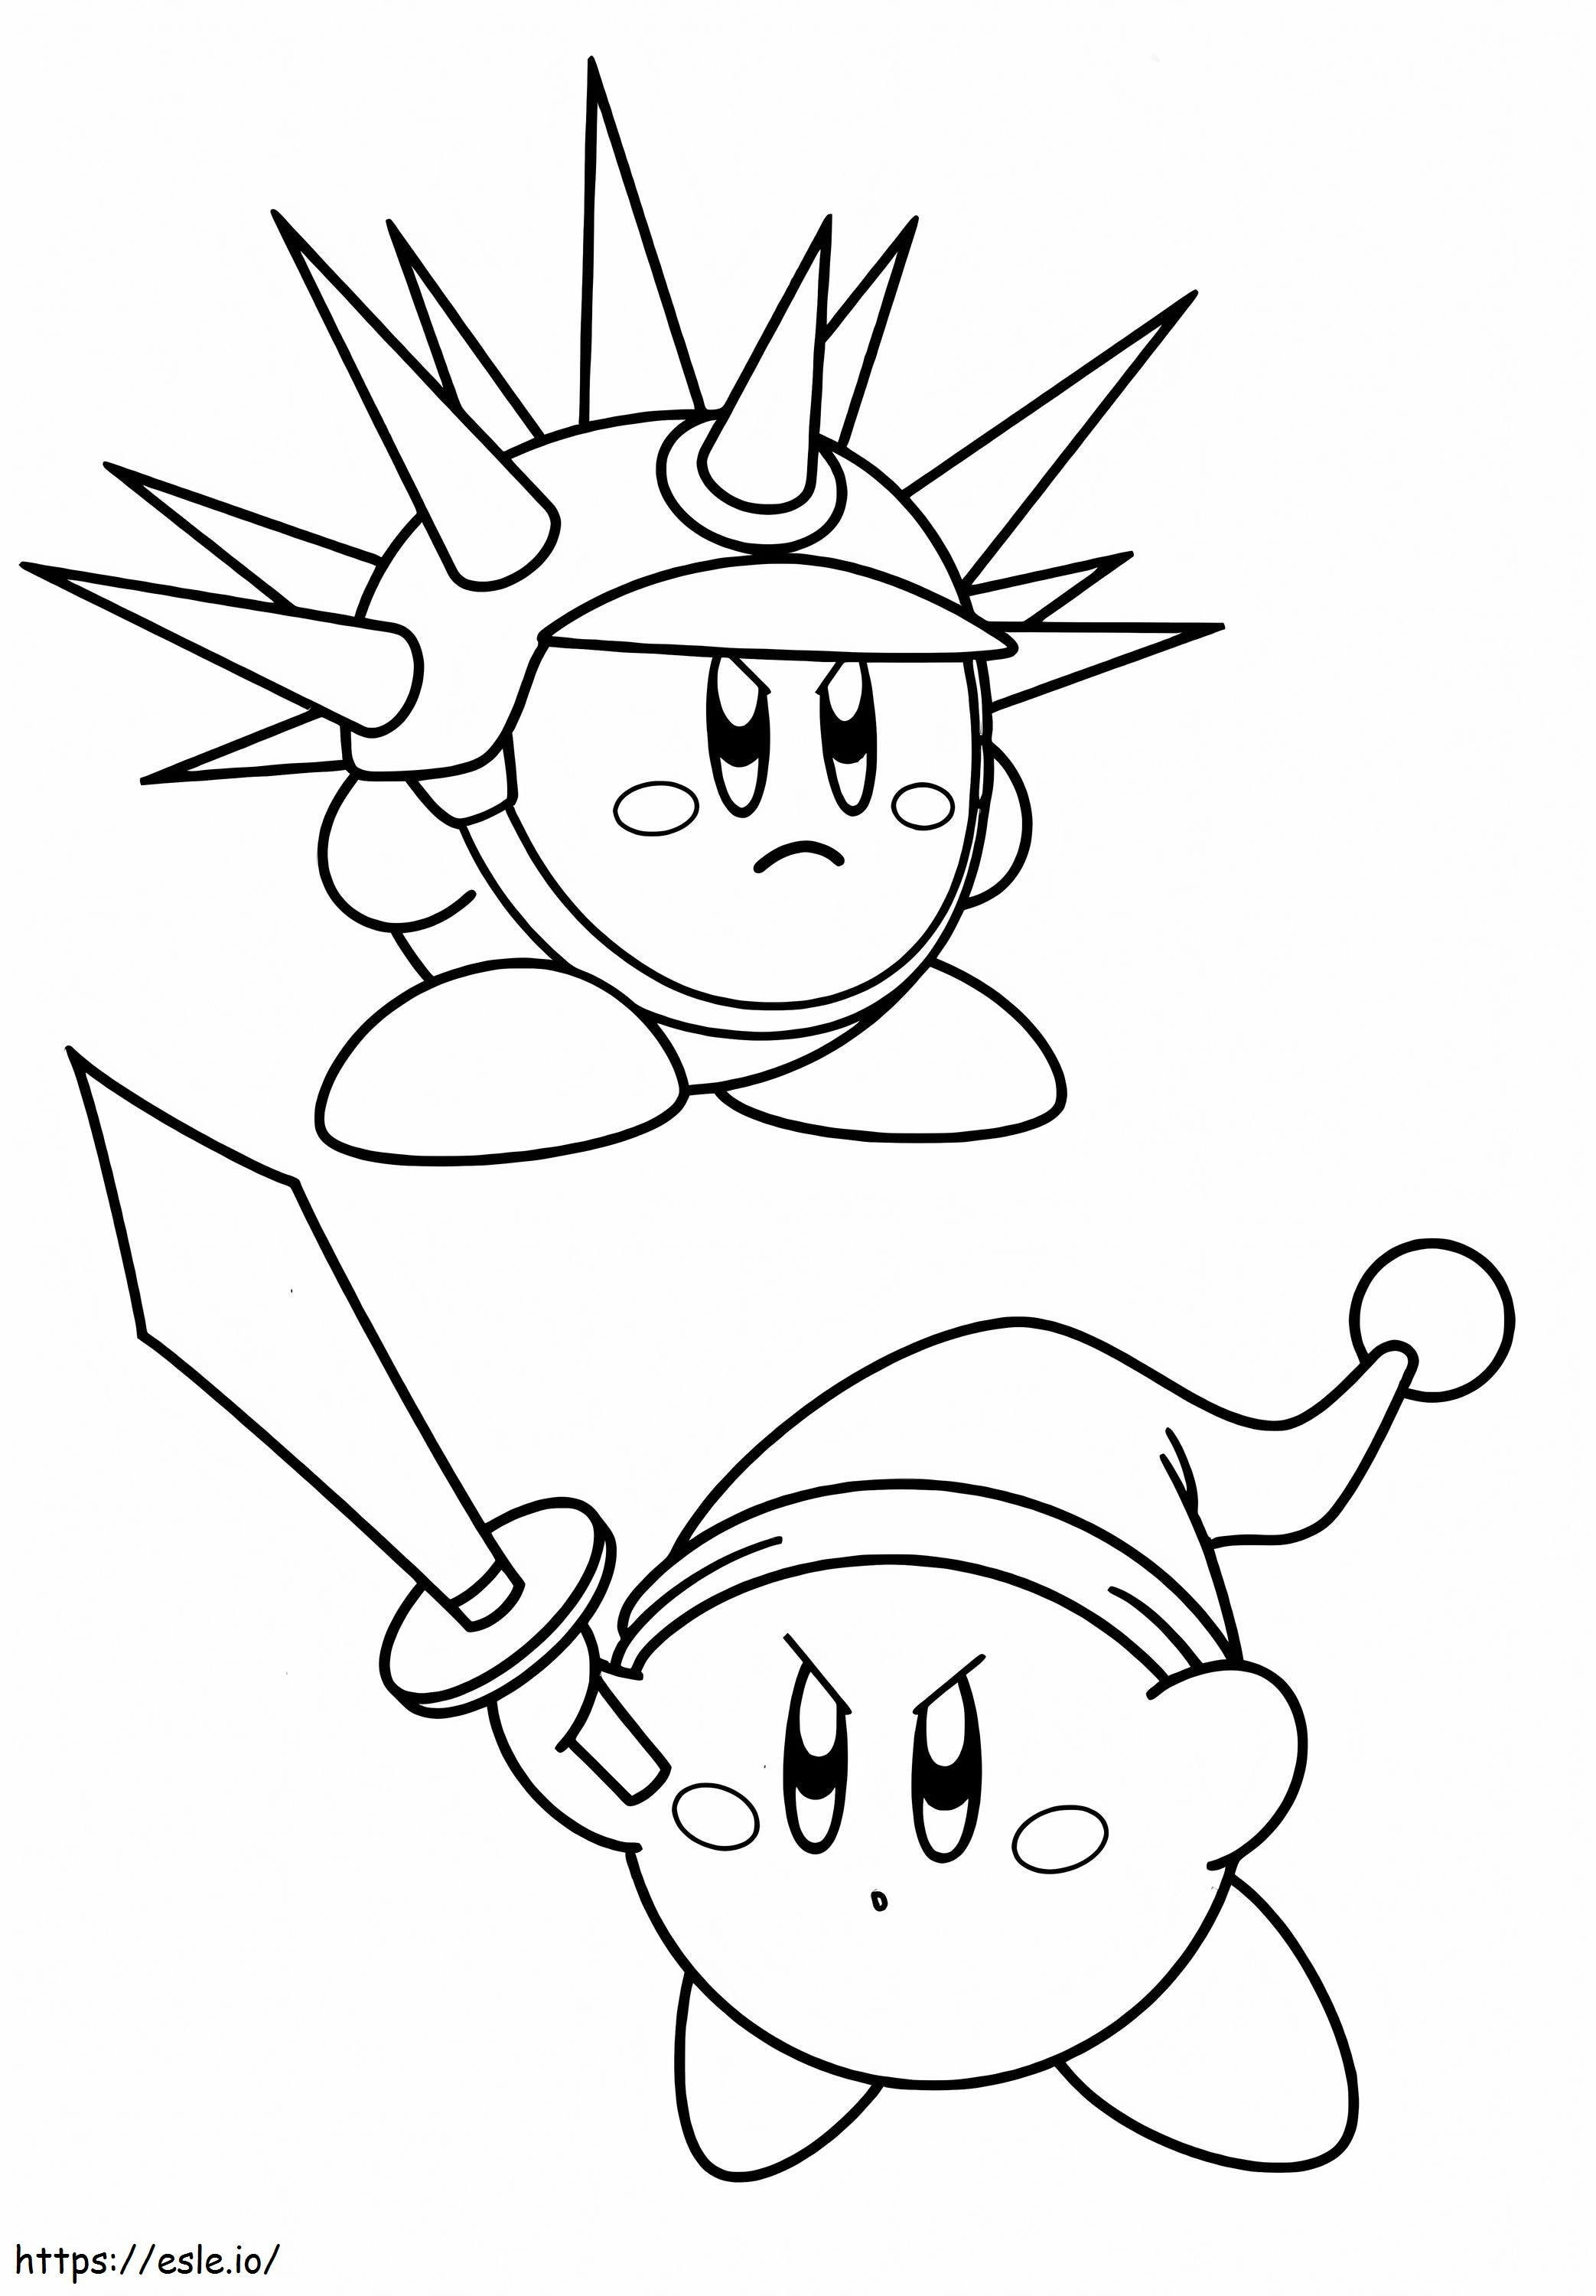 Kirby'S twee huiden kleurplaat kleurplaat